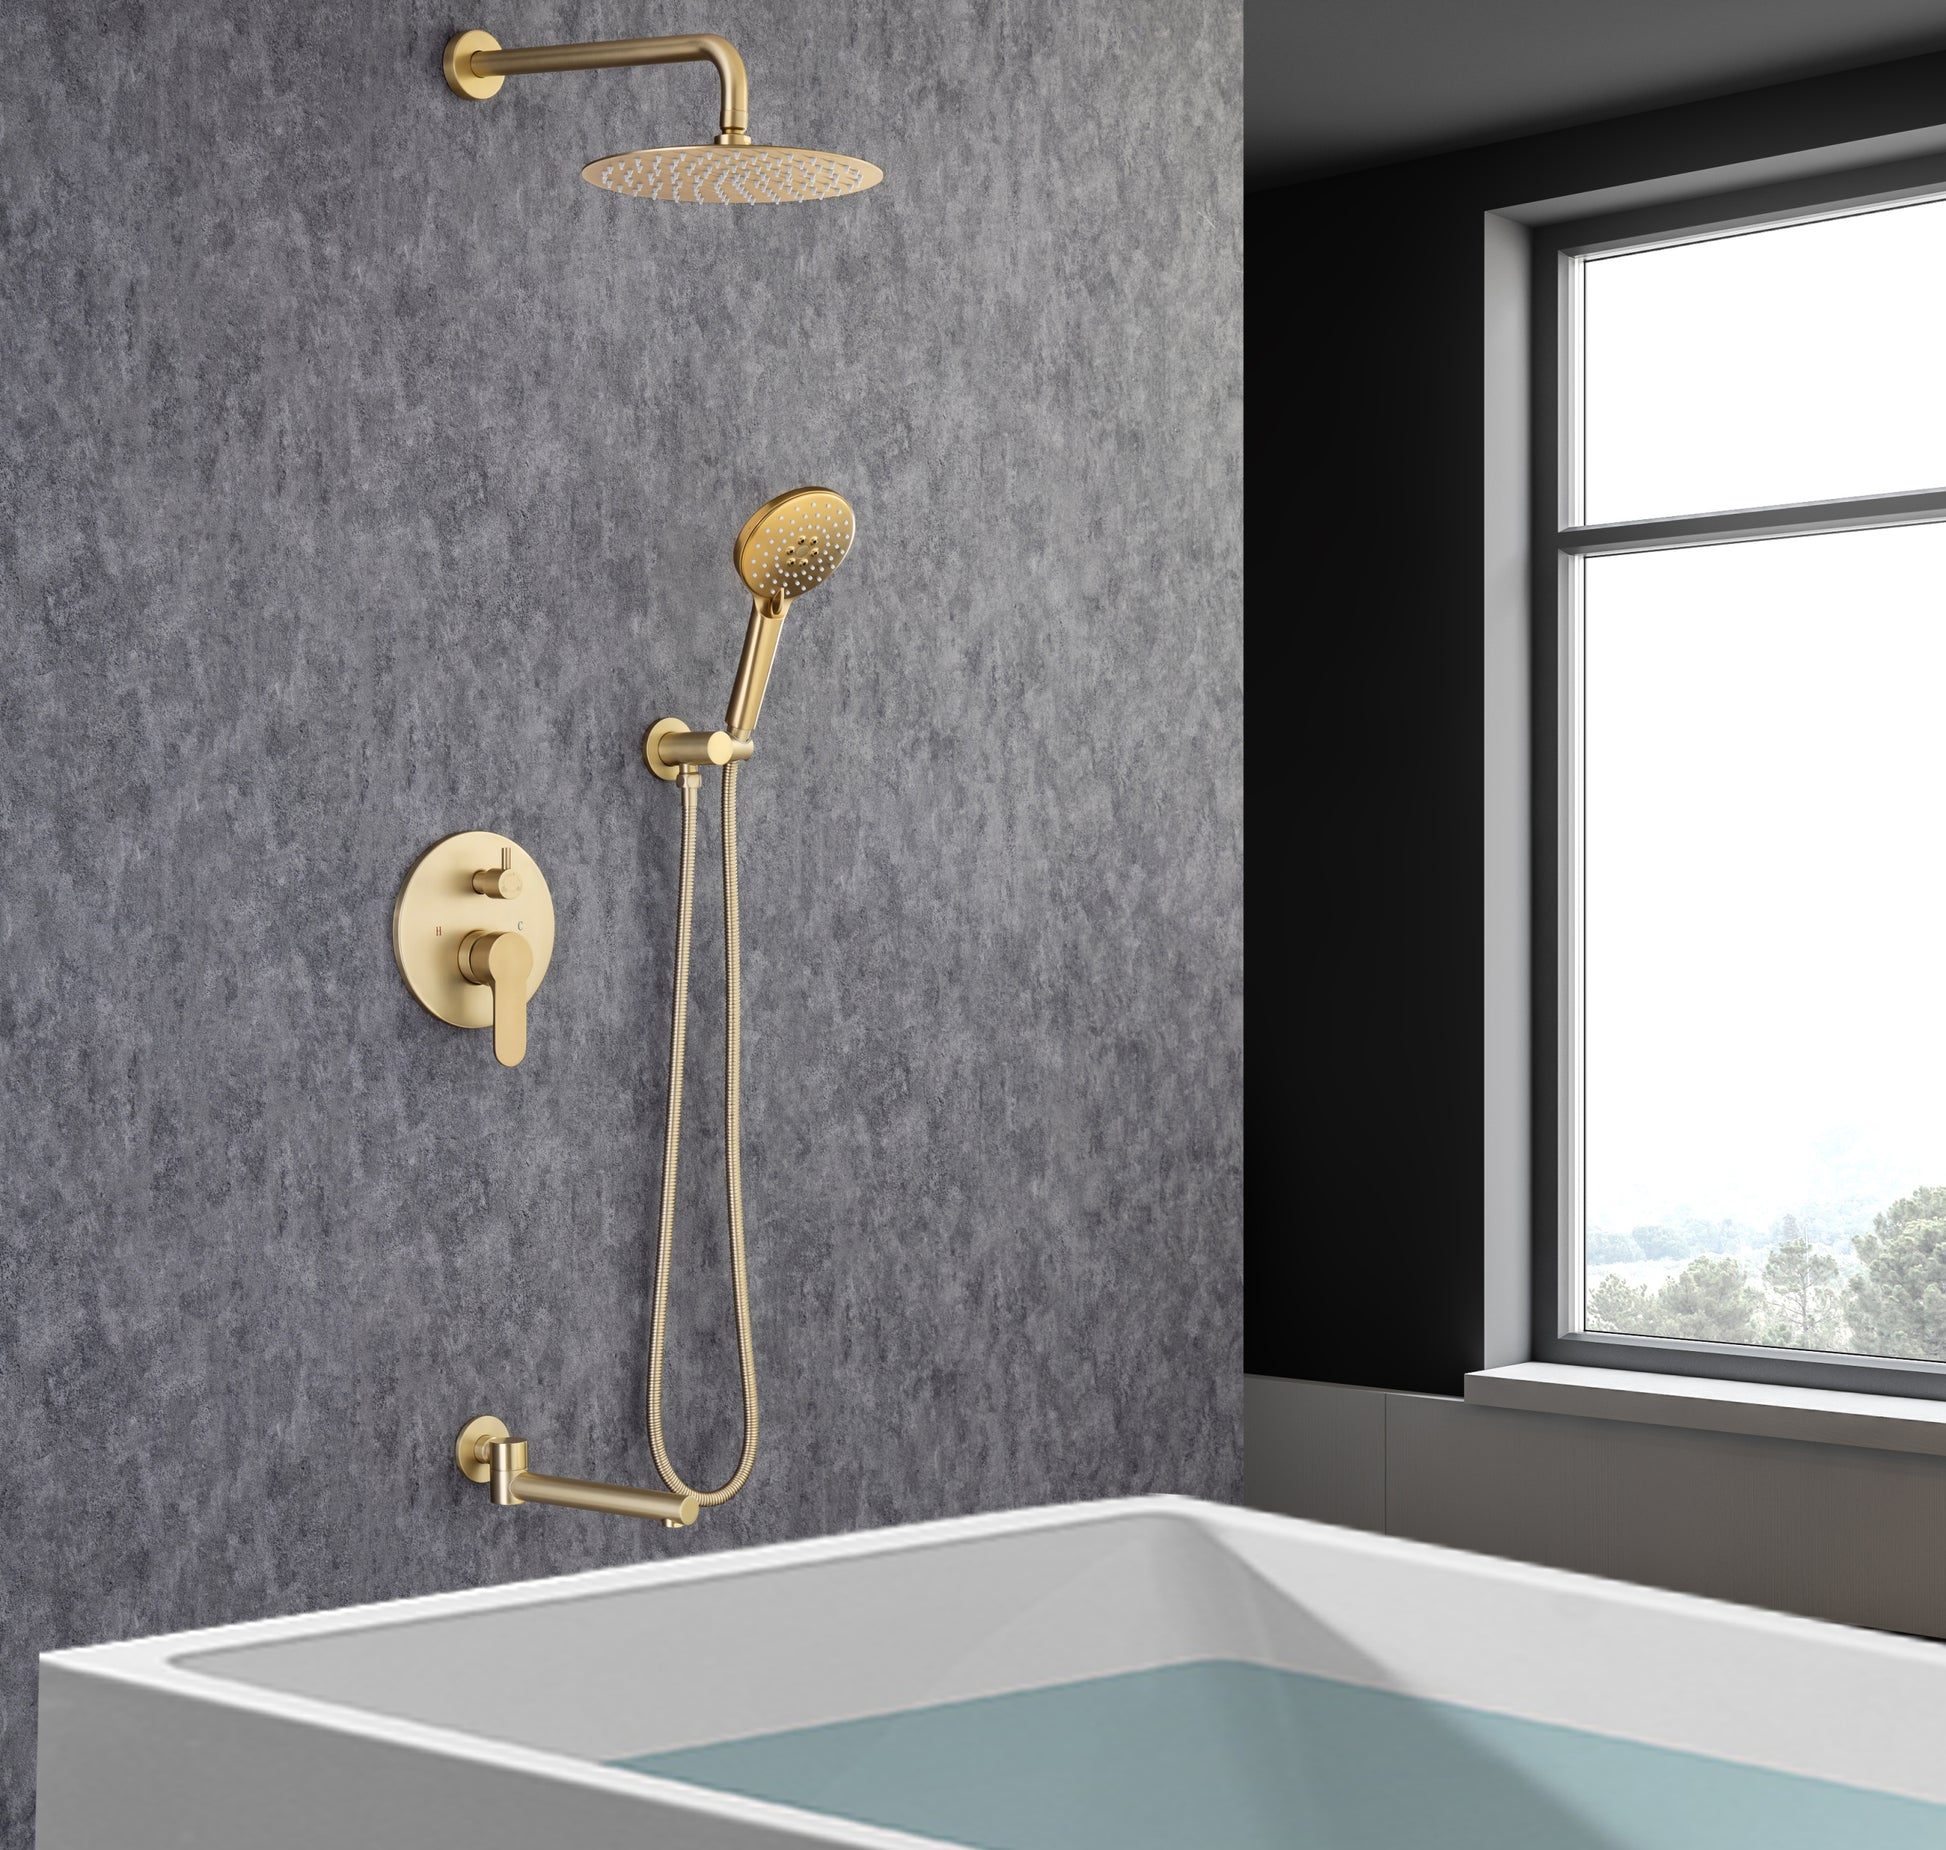 Tub Shower Faucets Sets Complete Bathtub Faucet Set golden-brass